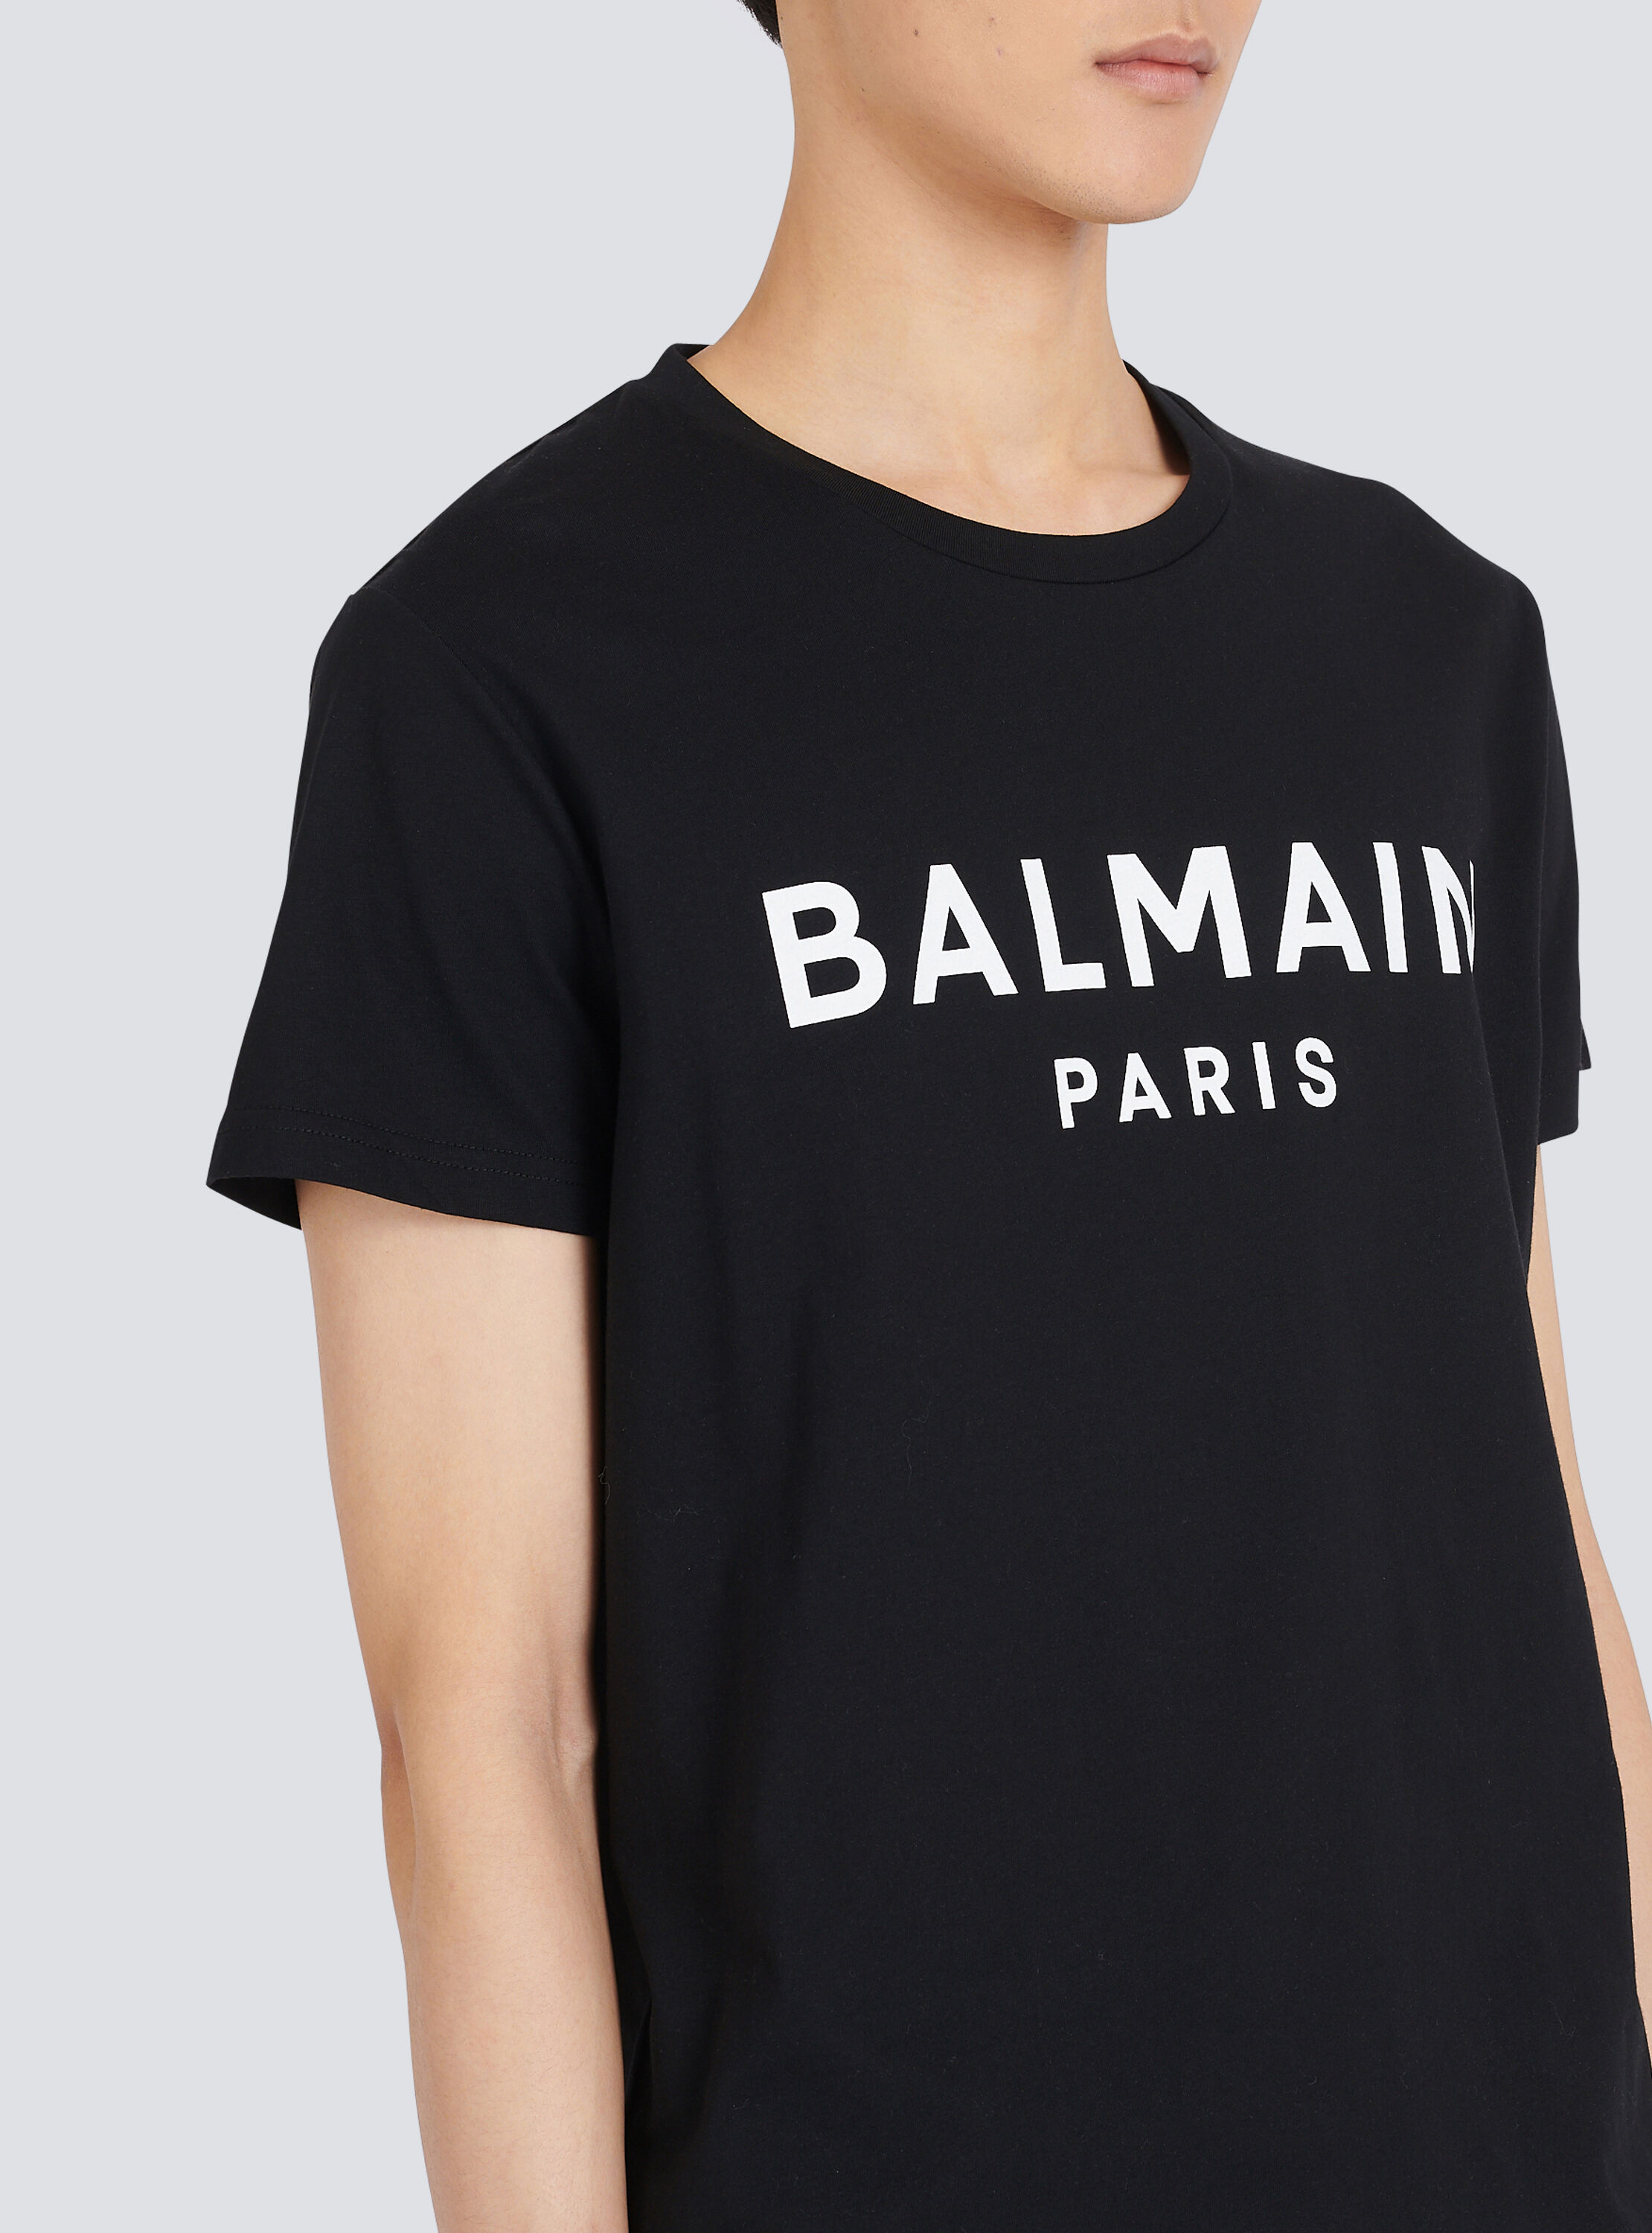 Balmain Balmain Paris Shirt Size 34/35 